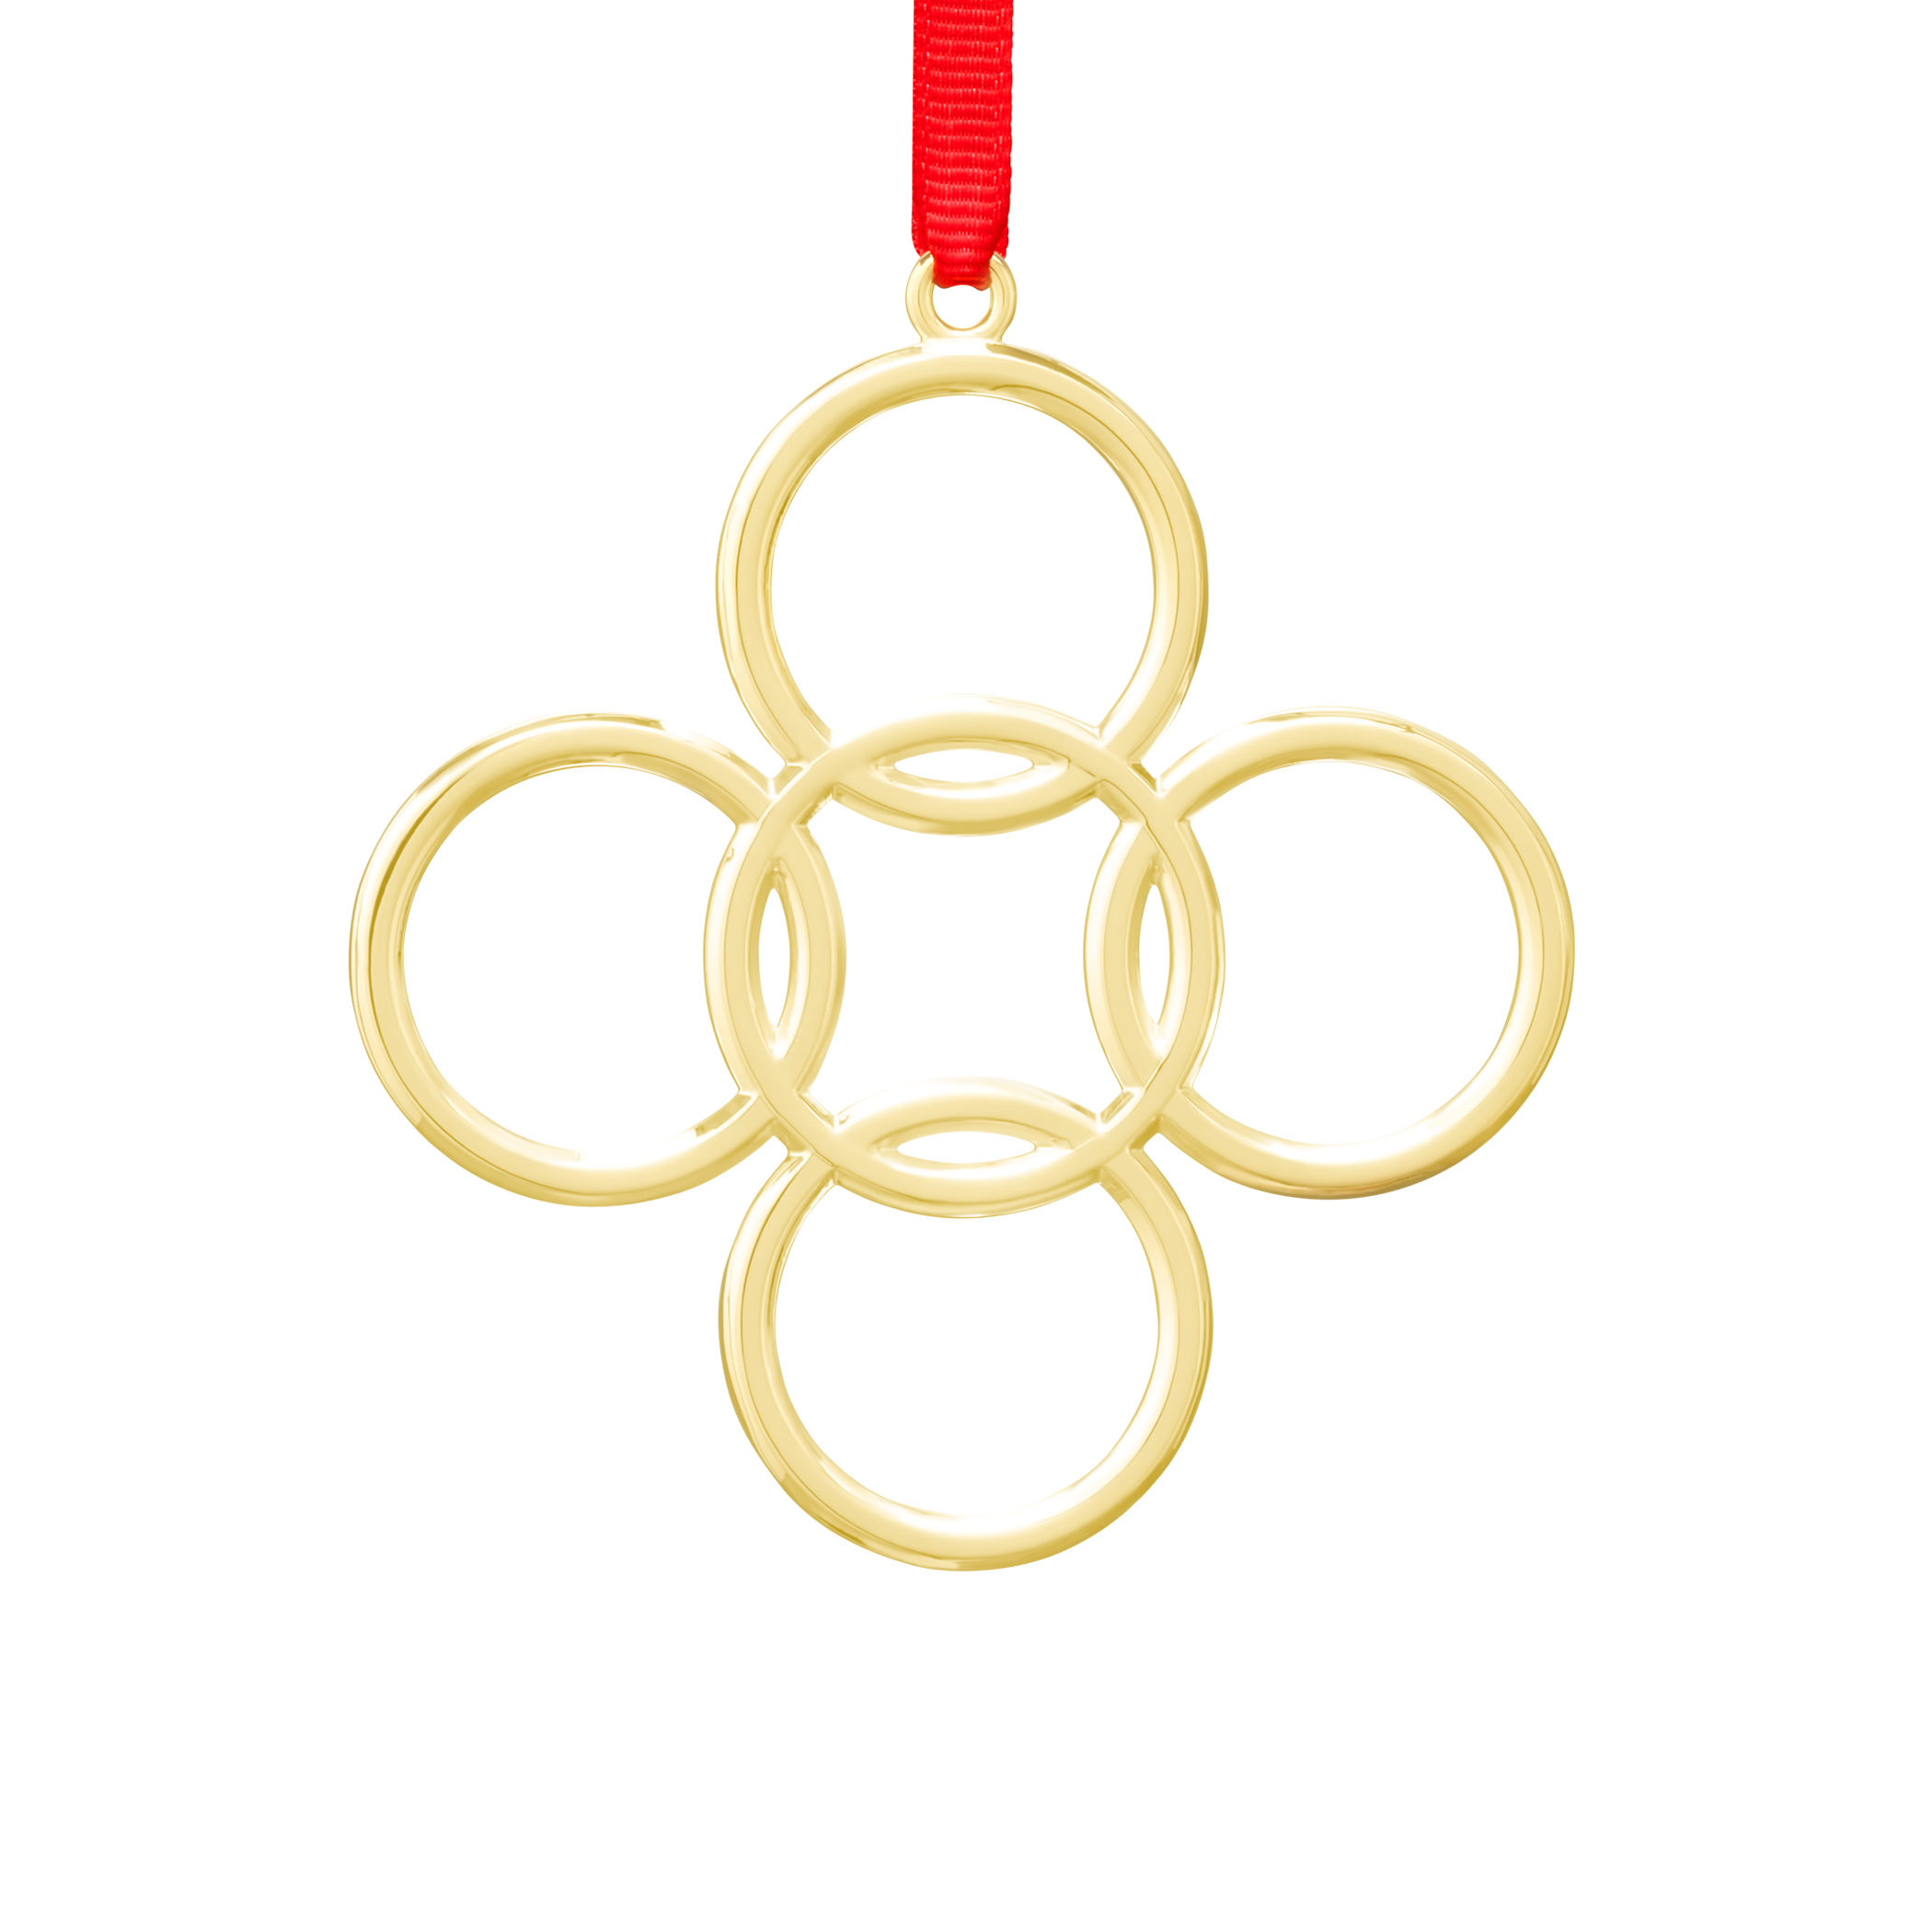 verschijnen Verschrikking geloof Twelve Days of Christmas: Five Golden Rings Ornament | Nambe